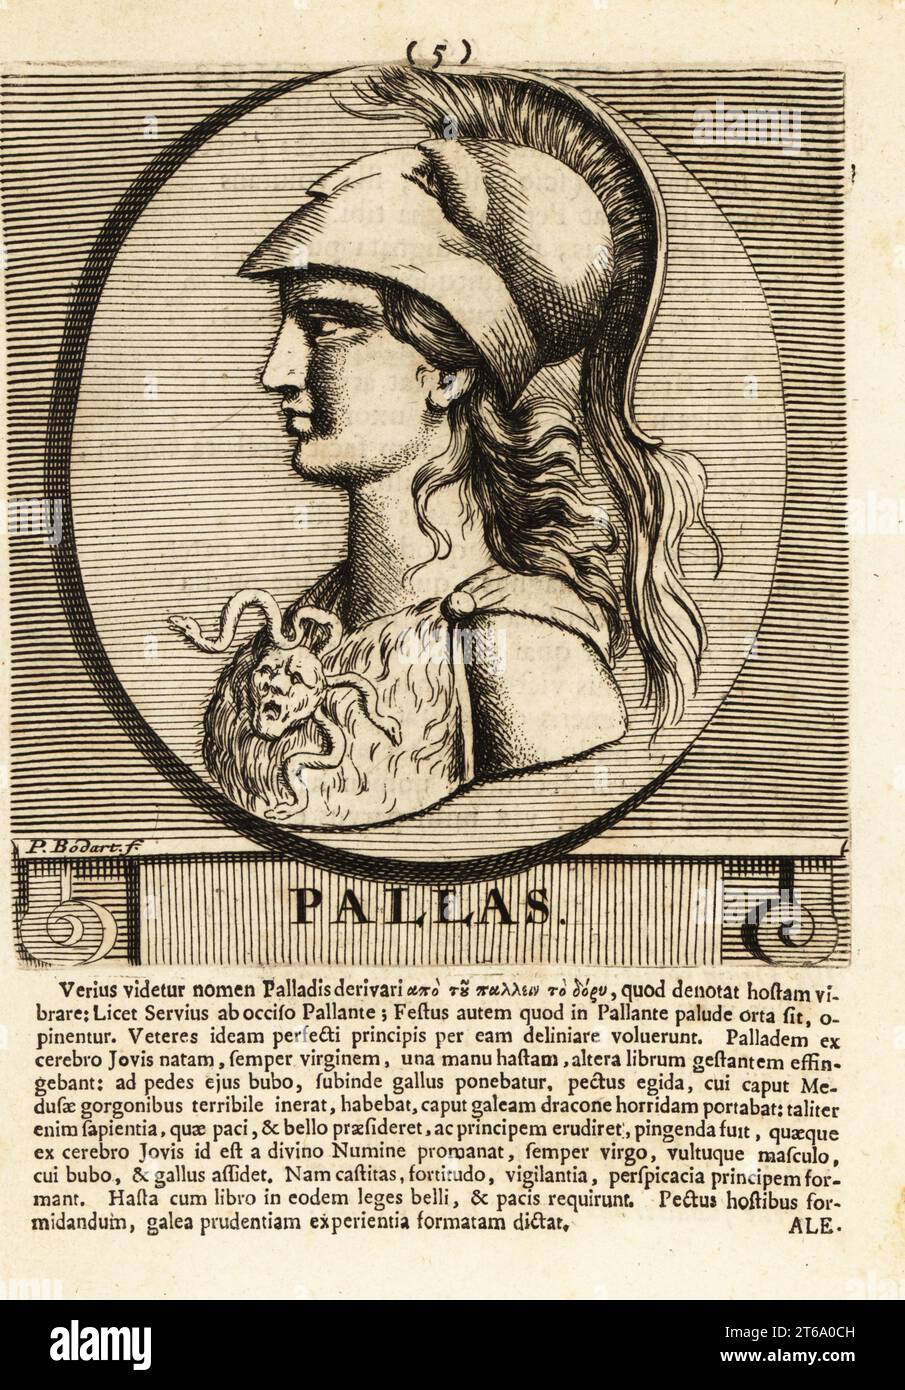 Athena oder Athene, oft als Pallas bezeichnet, antike griechische Göttin, die mit Weisheit, Handwerkskunst und Krieg verbunden ist. Sie trägt einen Helm, ein Gewand aus Tierhaut und eine Brosche mit Medusa-Kopf und Schlangenhaaren. Römische Göttin Minerva. Kupferstich von Pieter Bodart (1676–1712) aus Henricus spoors Deorum et Heroum, Virorum et Mulierum Illustrium imagines Antiquae Illustatae, Götter und Helden, Männer und Frauen, illustriert mit antiken Bildern, Petrum, Amsterdam, 1715. Erstmals 1707 als Favissæ utriusque antiquitatis tam Romanæ quam Græcæ veröffentlicht. Henricus Spoor war ein niederländischer Arzt, klassisch Stockfoto